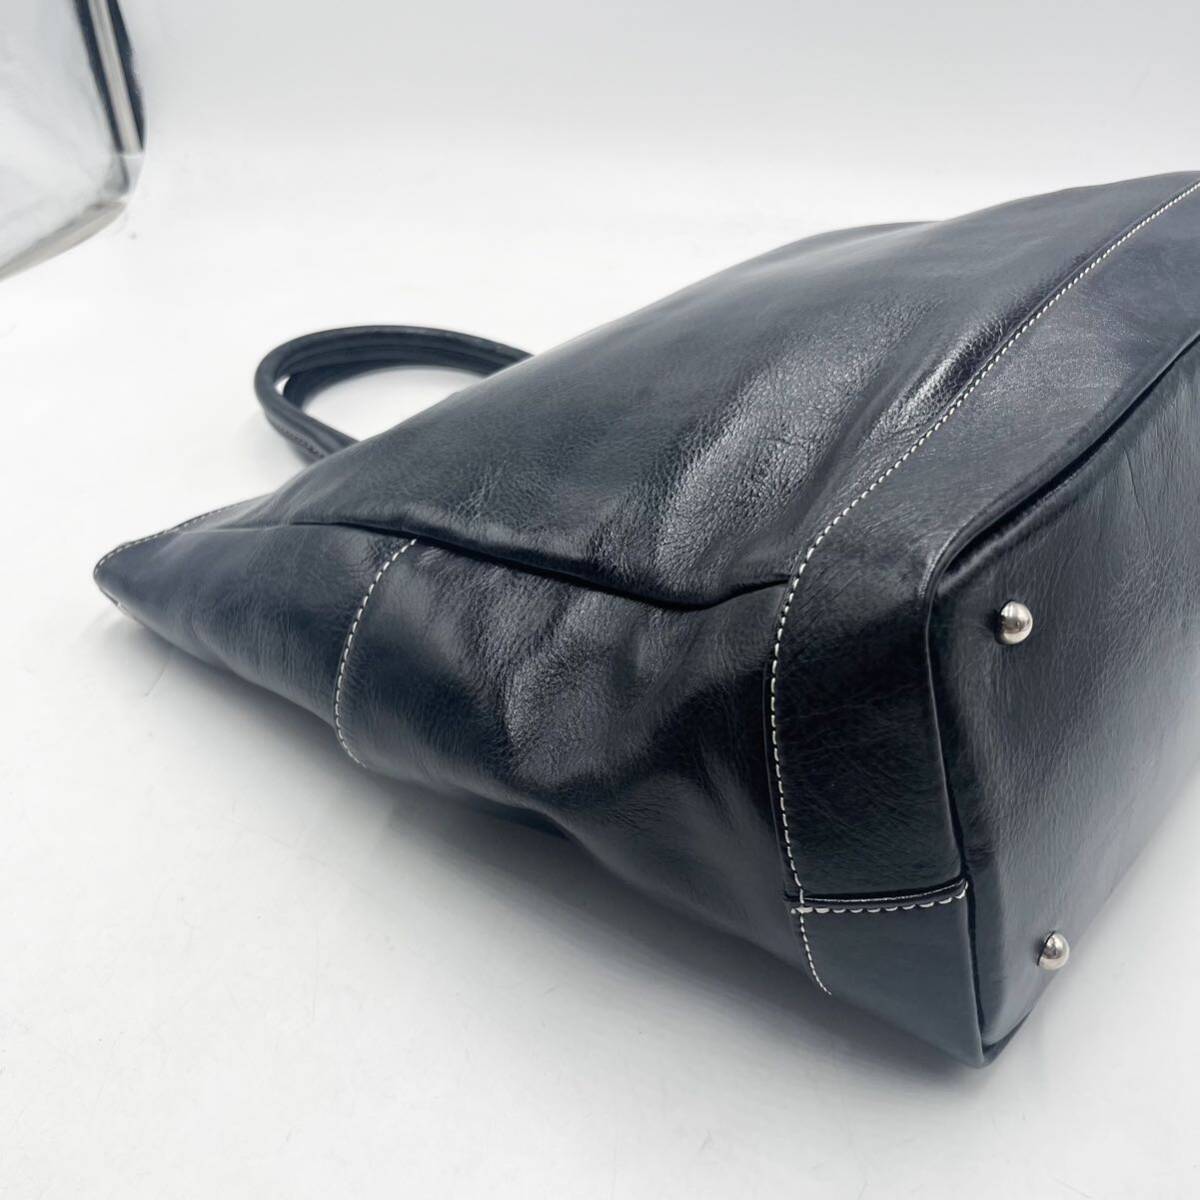 1 jpy [ new goods unused ] tote bag business bag briefcase shoulder bag leather leather black black men's lady's 